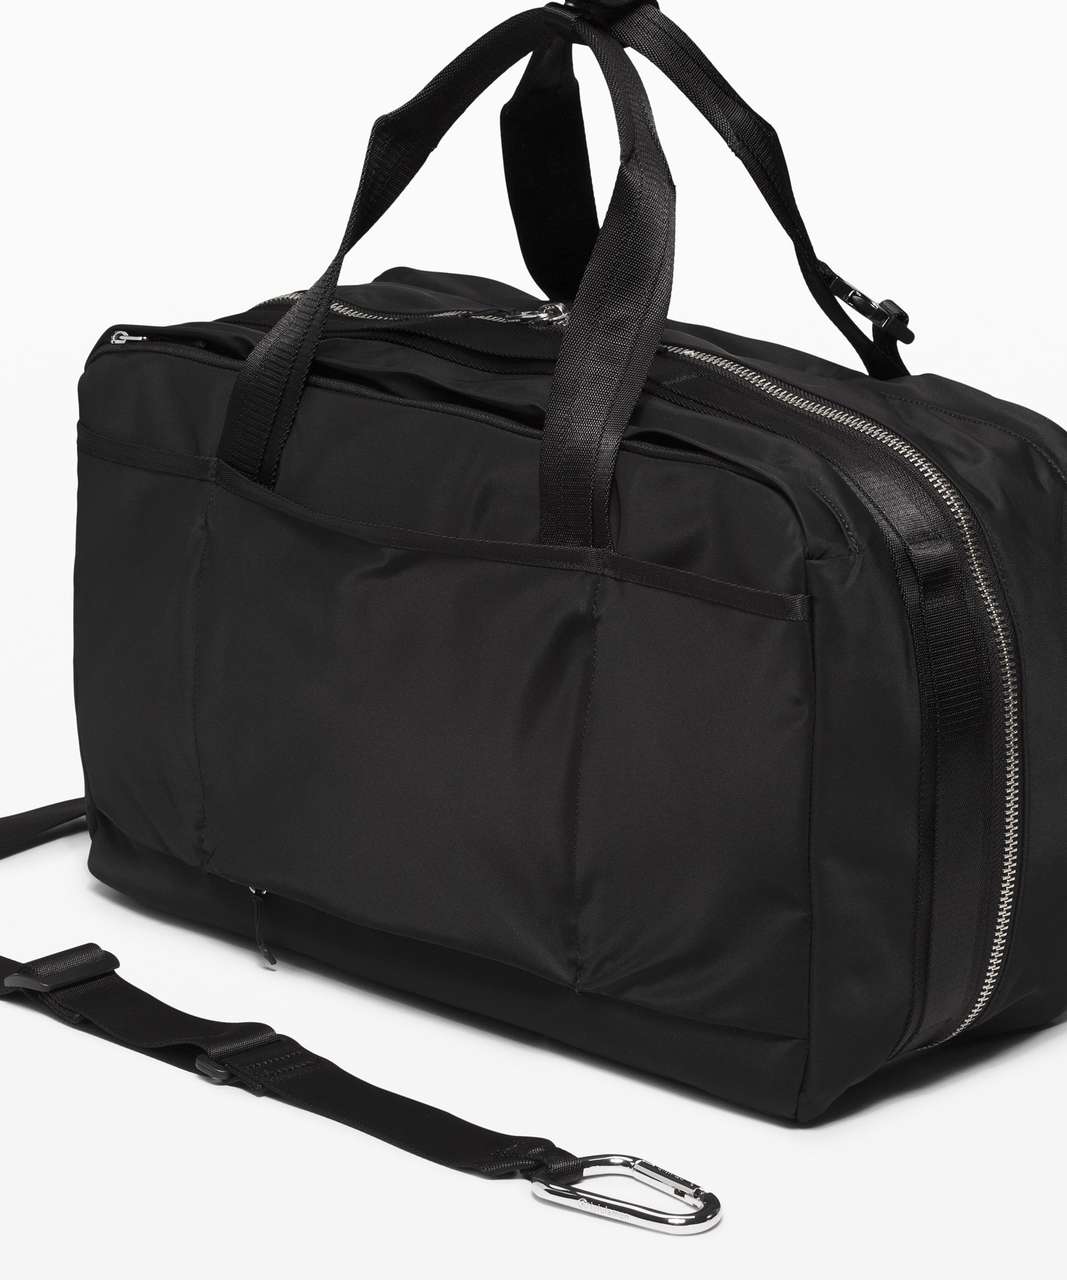 Lululemon Urban Nomad Large Duffle Bag 30L - Black / Rhino Grey